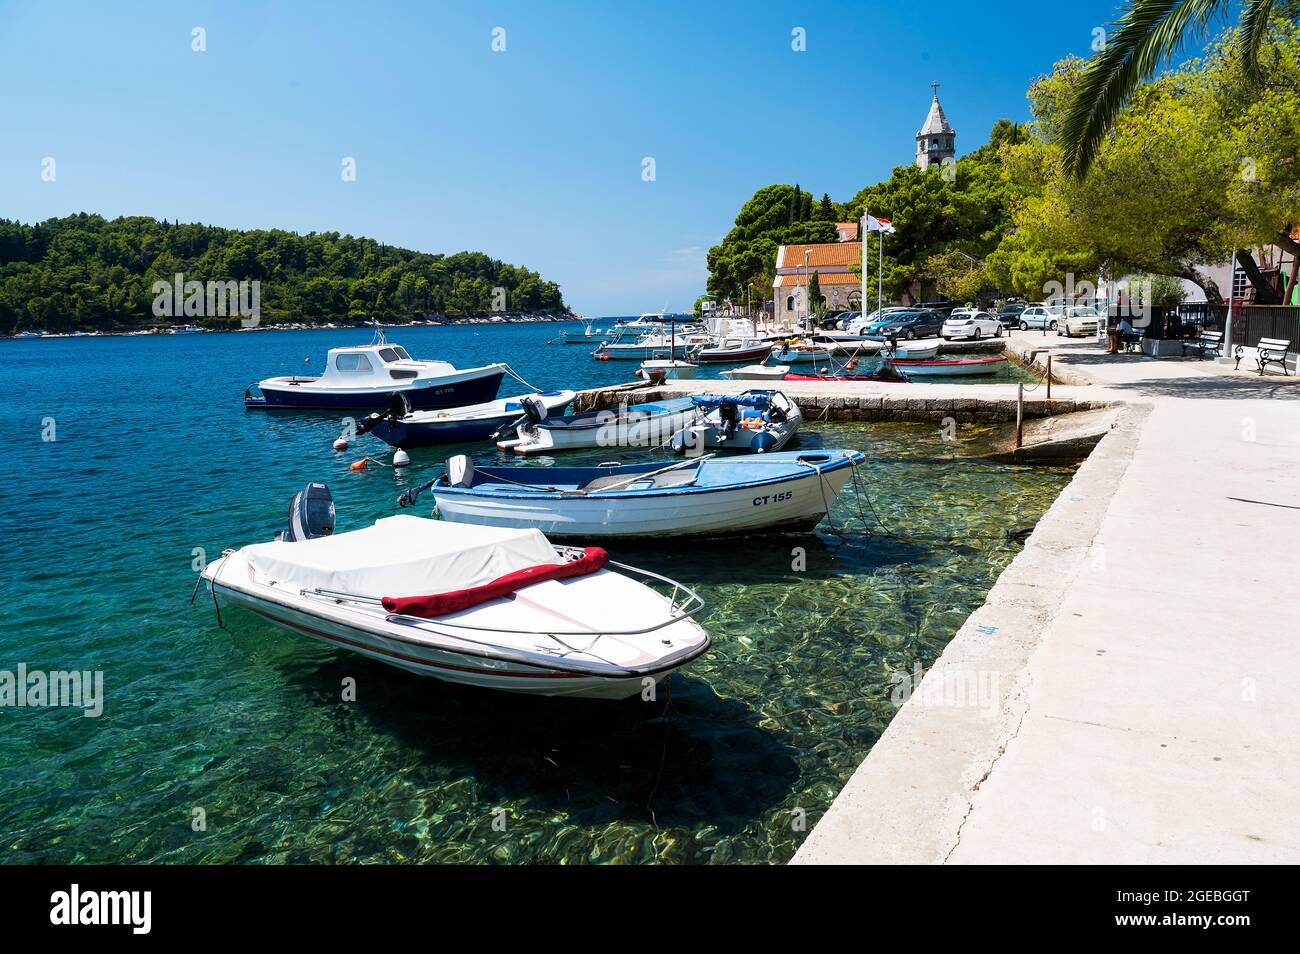 The beautiful marina at Cavtat on the Adriatic Coast of Croatia Stock Photo